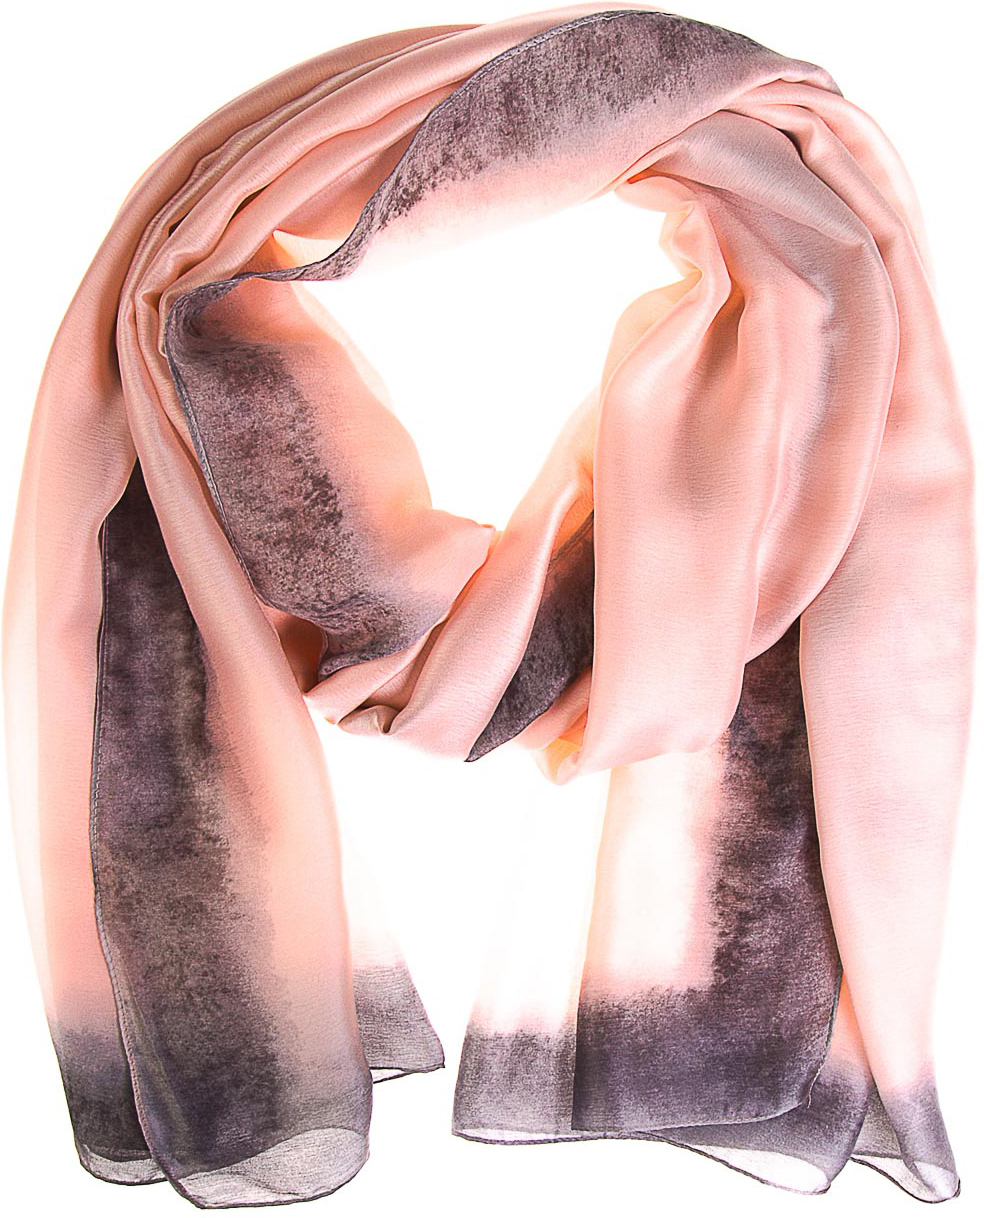 Палантин женский Vita Pelle, цвет: розовый, серый. K02P2630. Размер 180 х 90 см